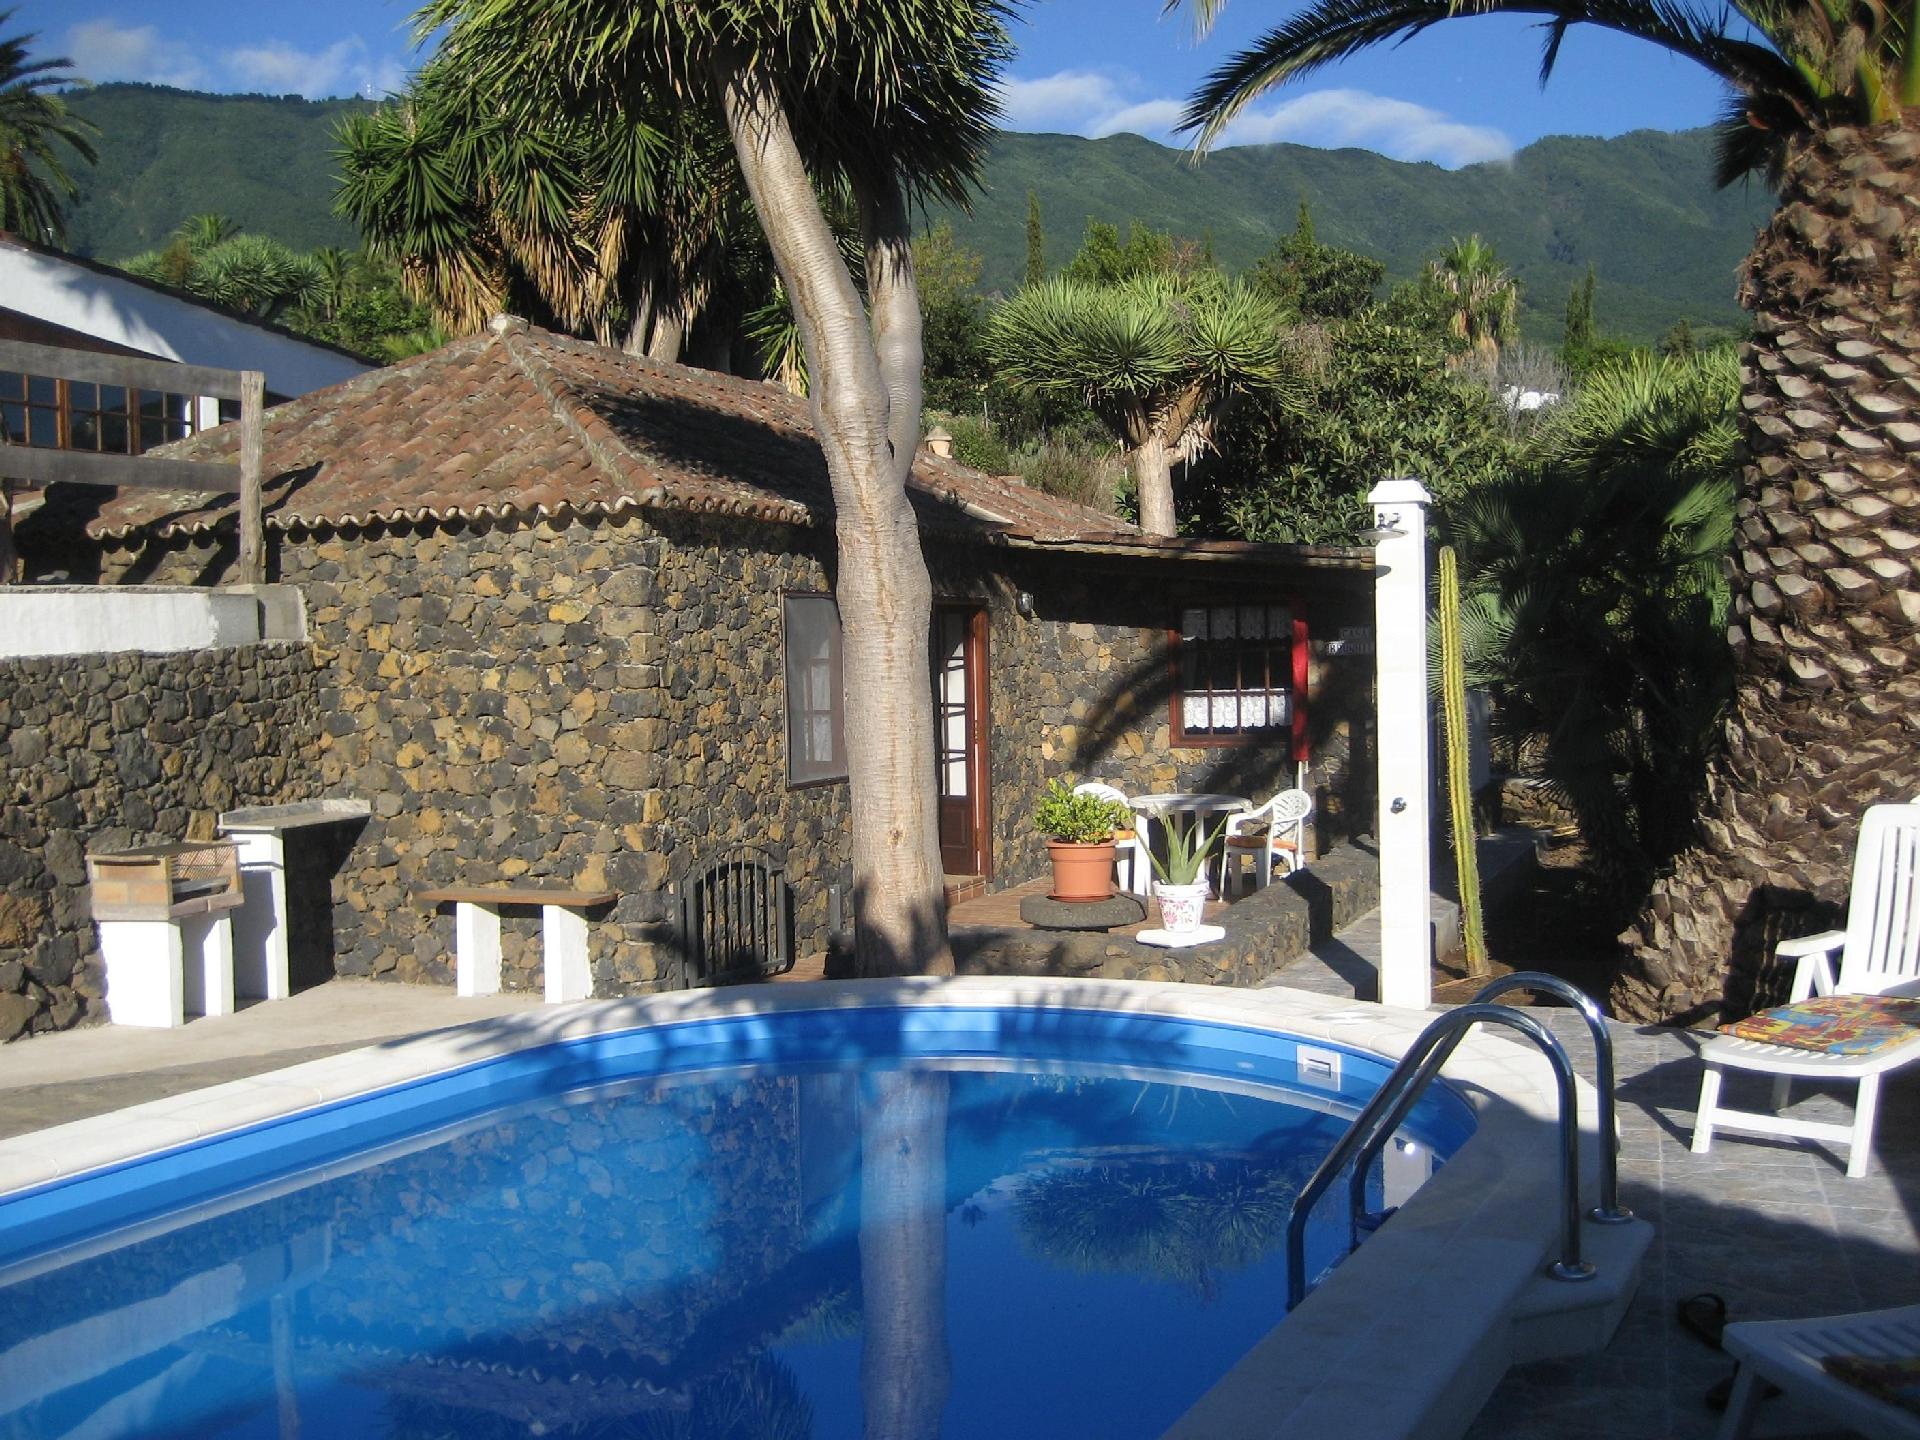 Ferienhaus mit Pool  in Spanien